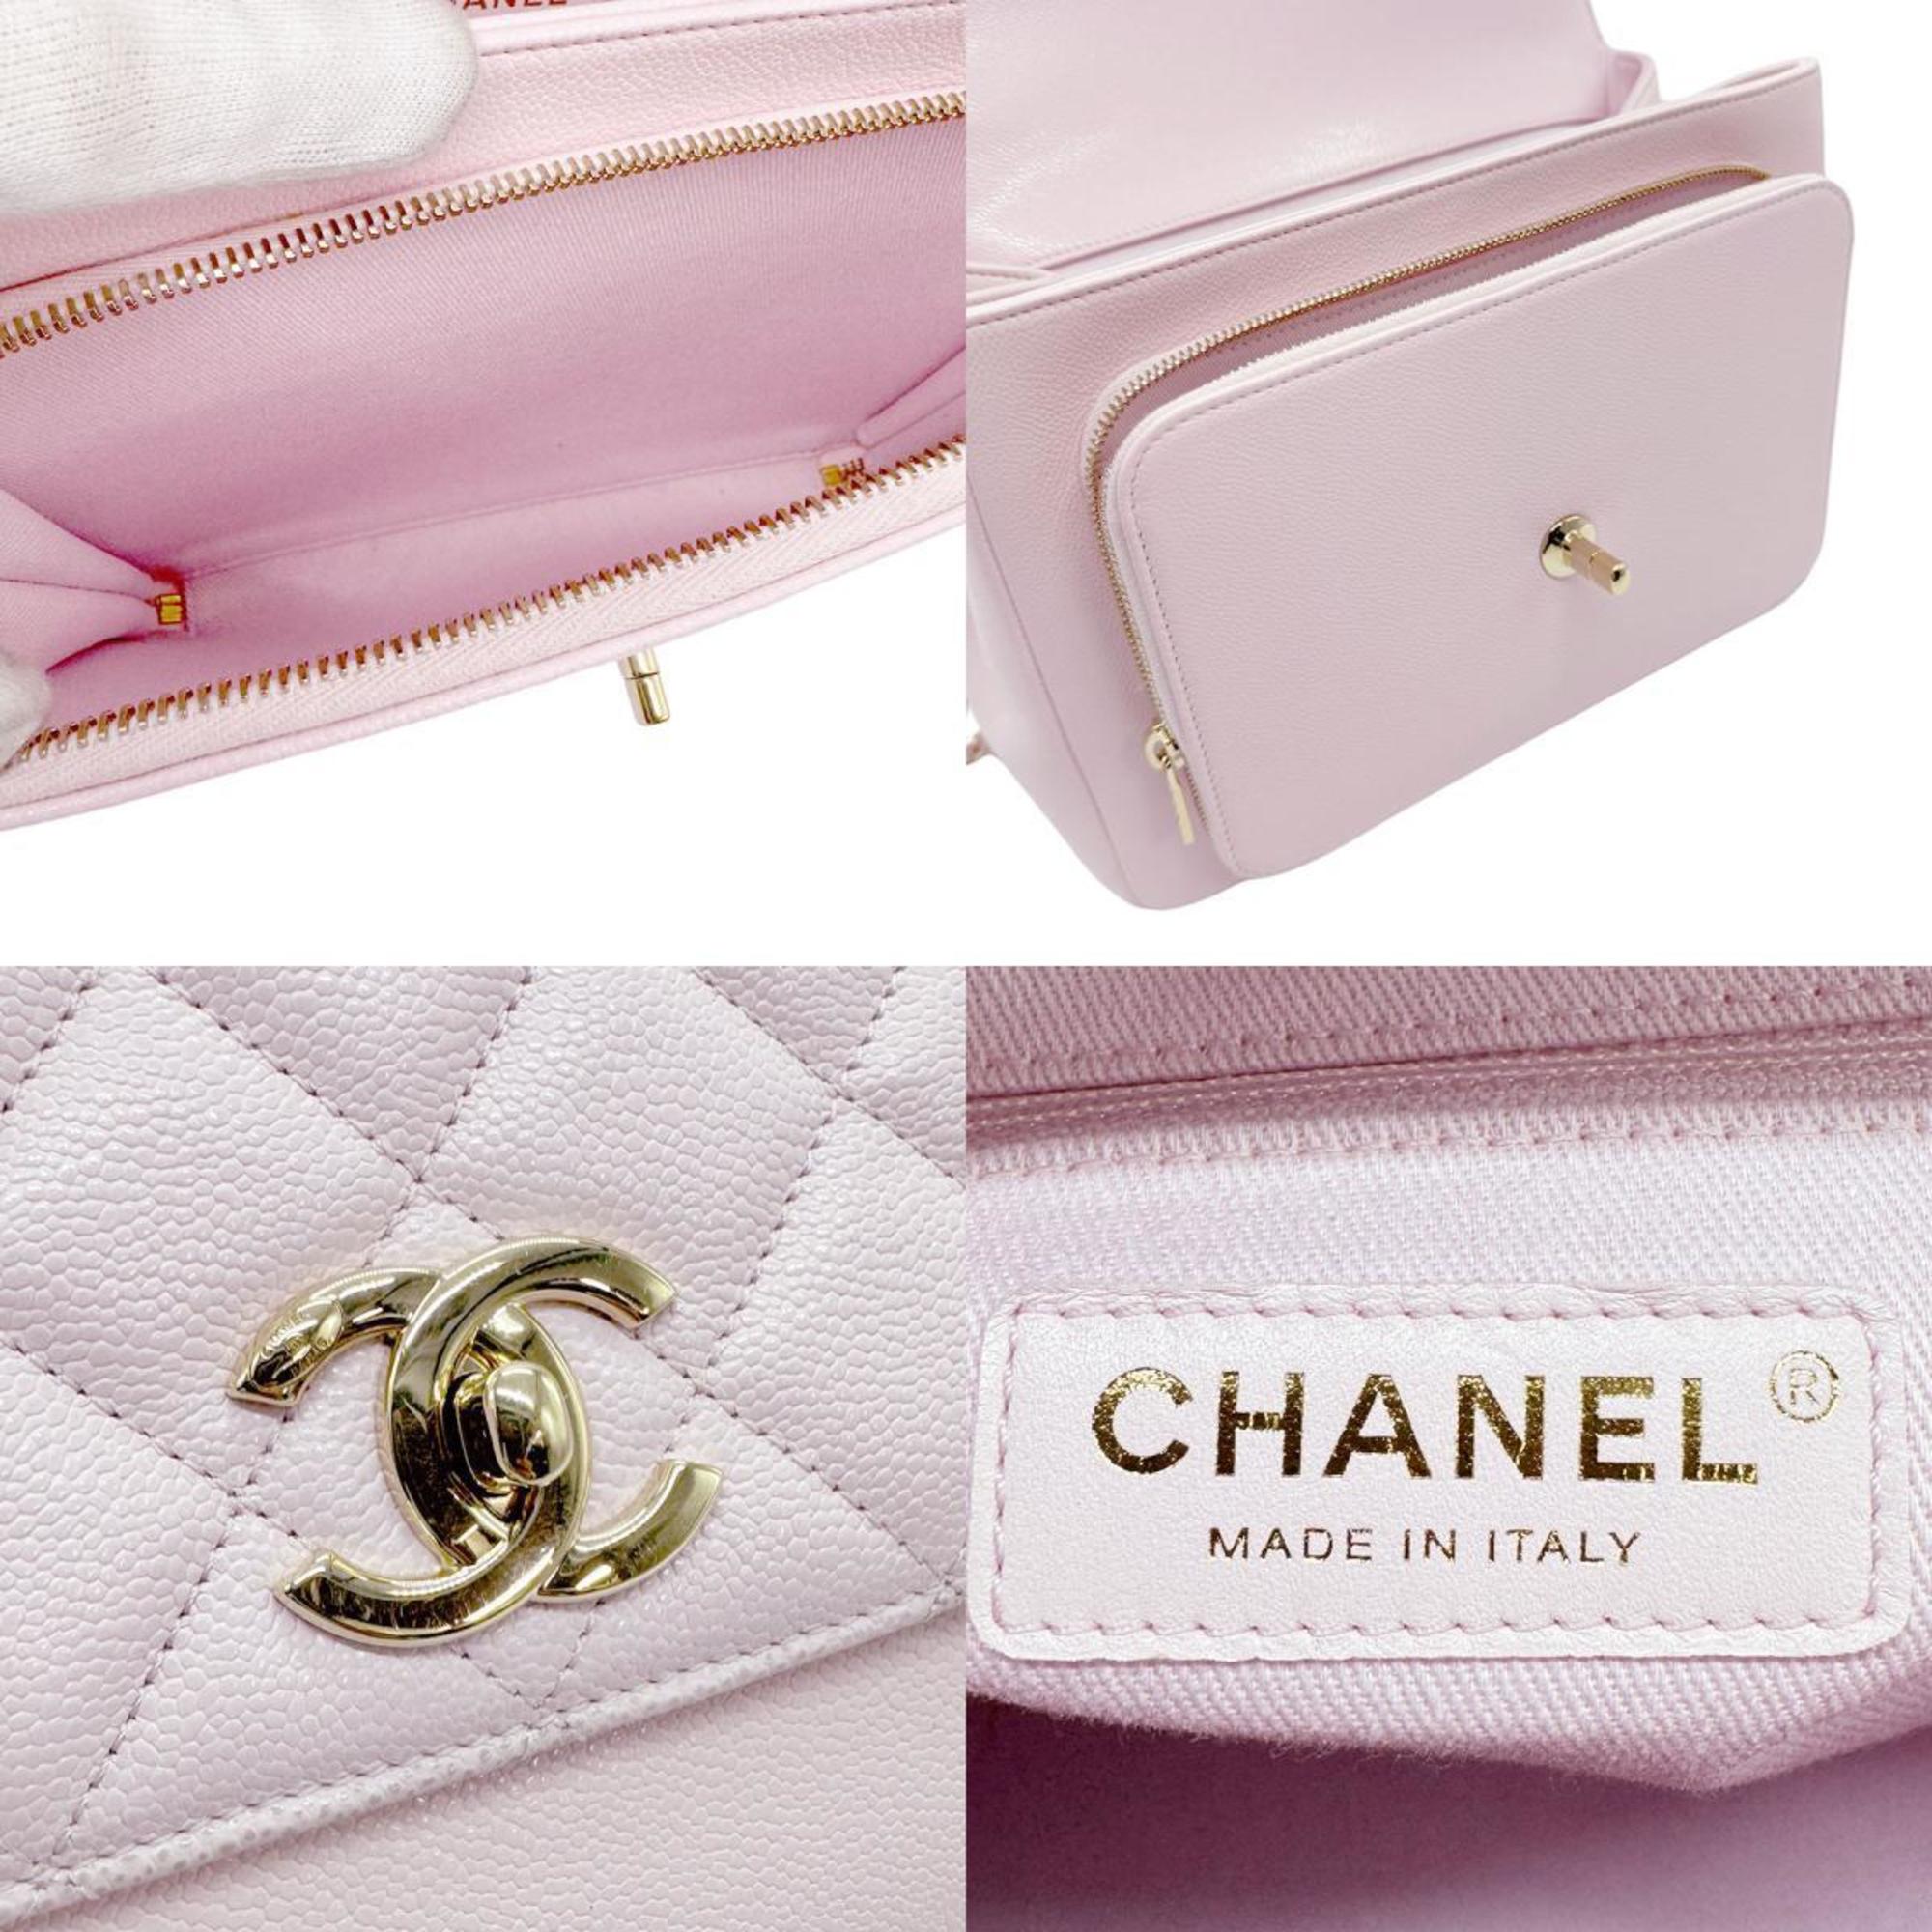 CHANEL Handbag Shoulder Bag Affinity Caviar Skin Leather Light Pink Women's z0702